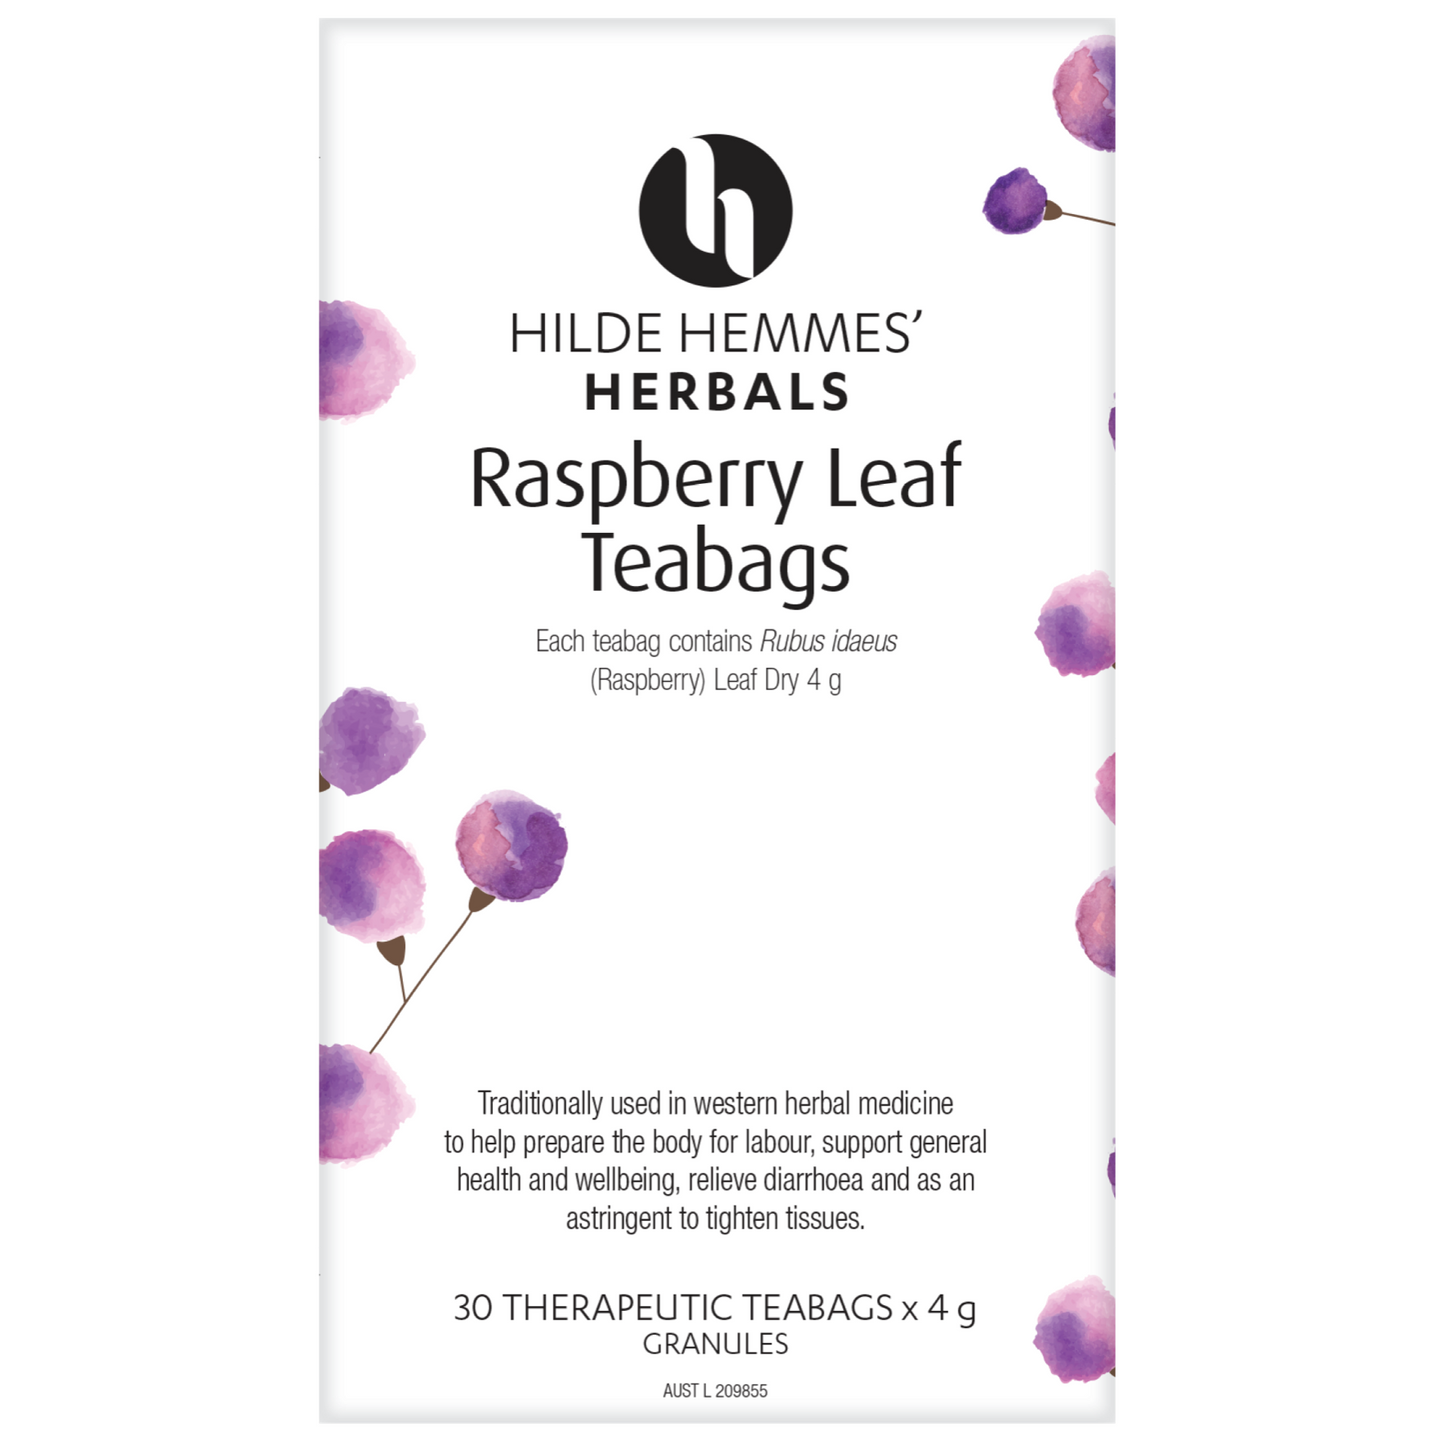 Hilde Hemmes Herbal's Tea 50g (Loose Leaf) Or 30 Tea Bags, Raspberry Leaf